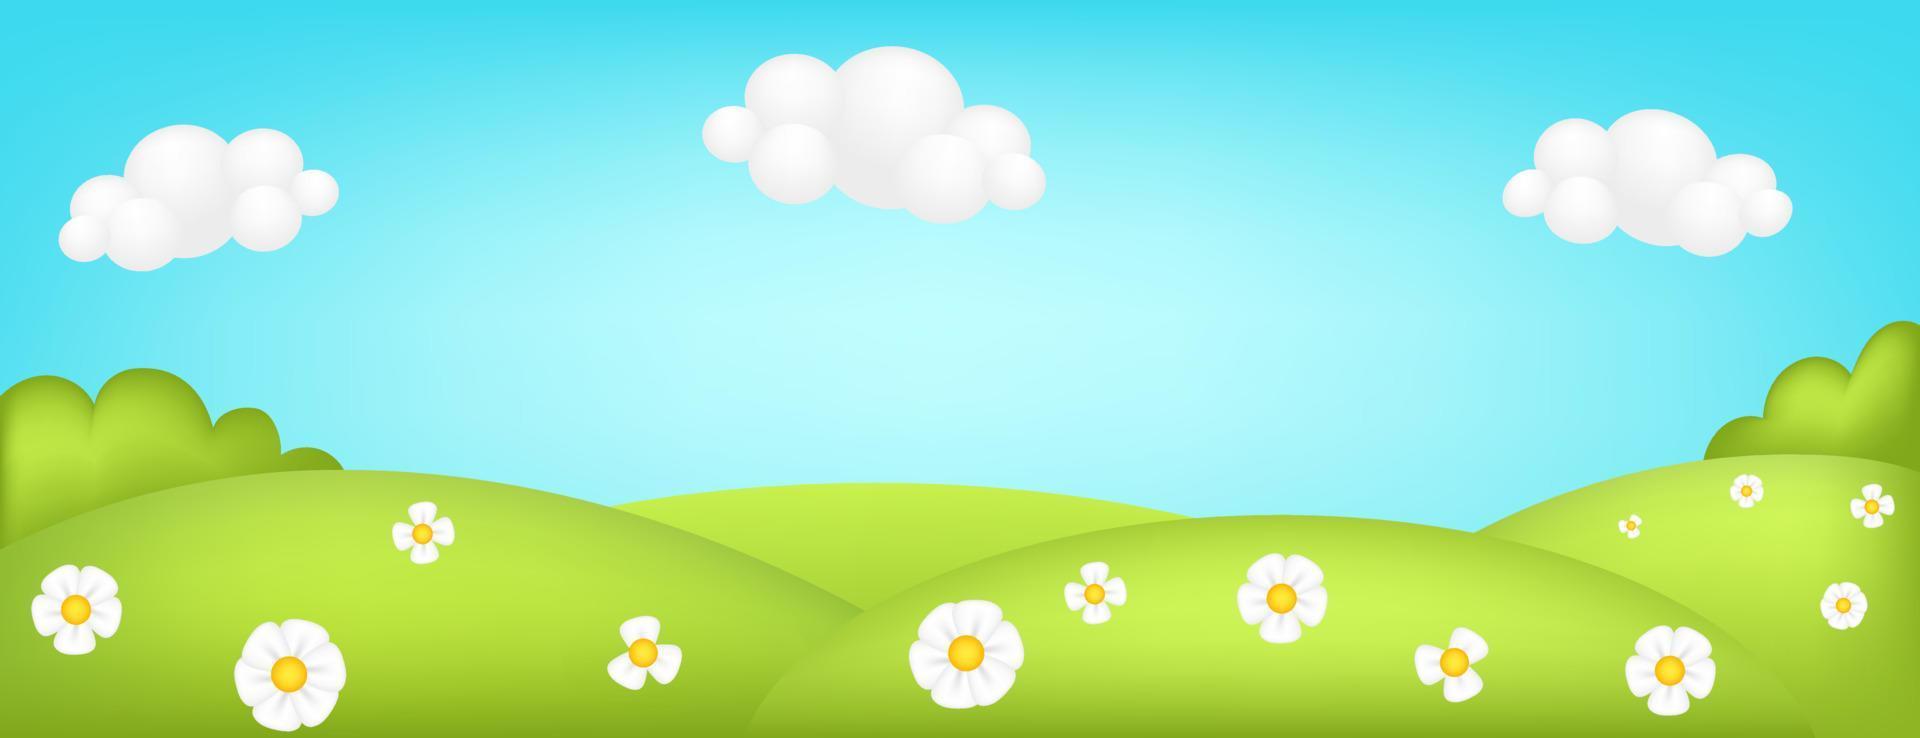 Prado panorama 3d ilustração vetorial. brilhante paisagem de fundo de crianças vale verde. cenário bonito colorido com pastagem verde primavera, árvores, flores, céu azul, nuvens para sites infantis. vetor